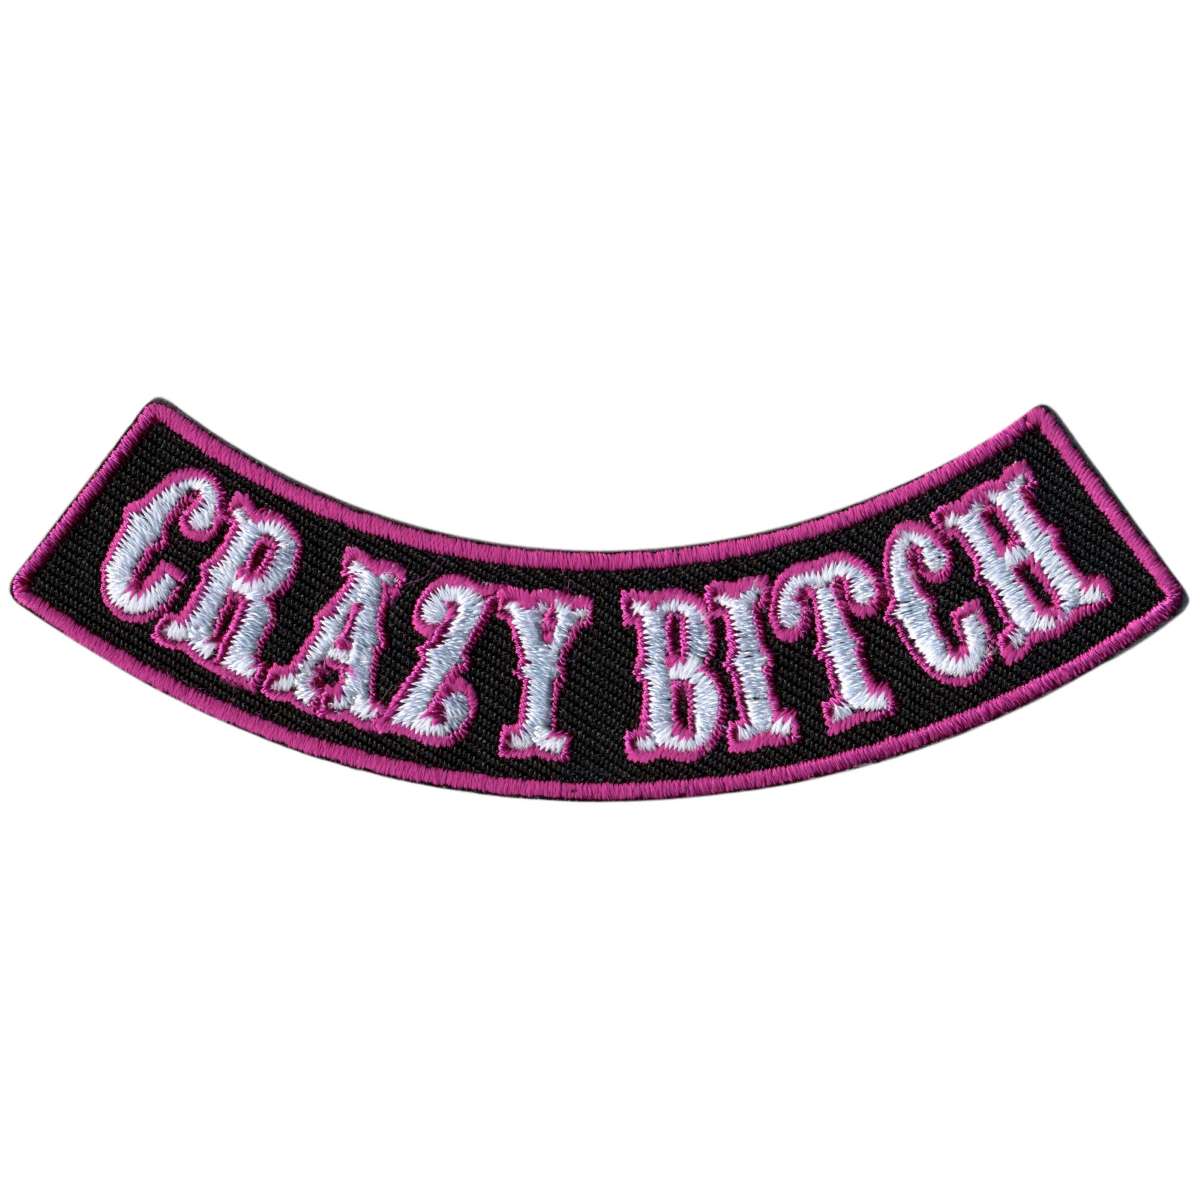 Hot Leathers Crazy Bitch 4” X 1” Bottom Rocker Patch PPM5186